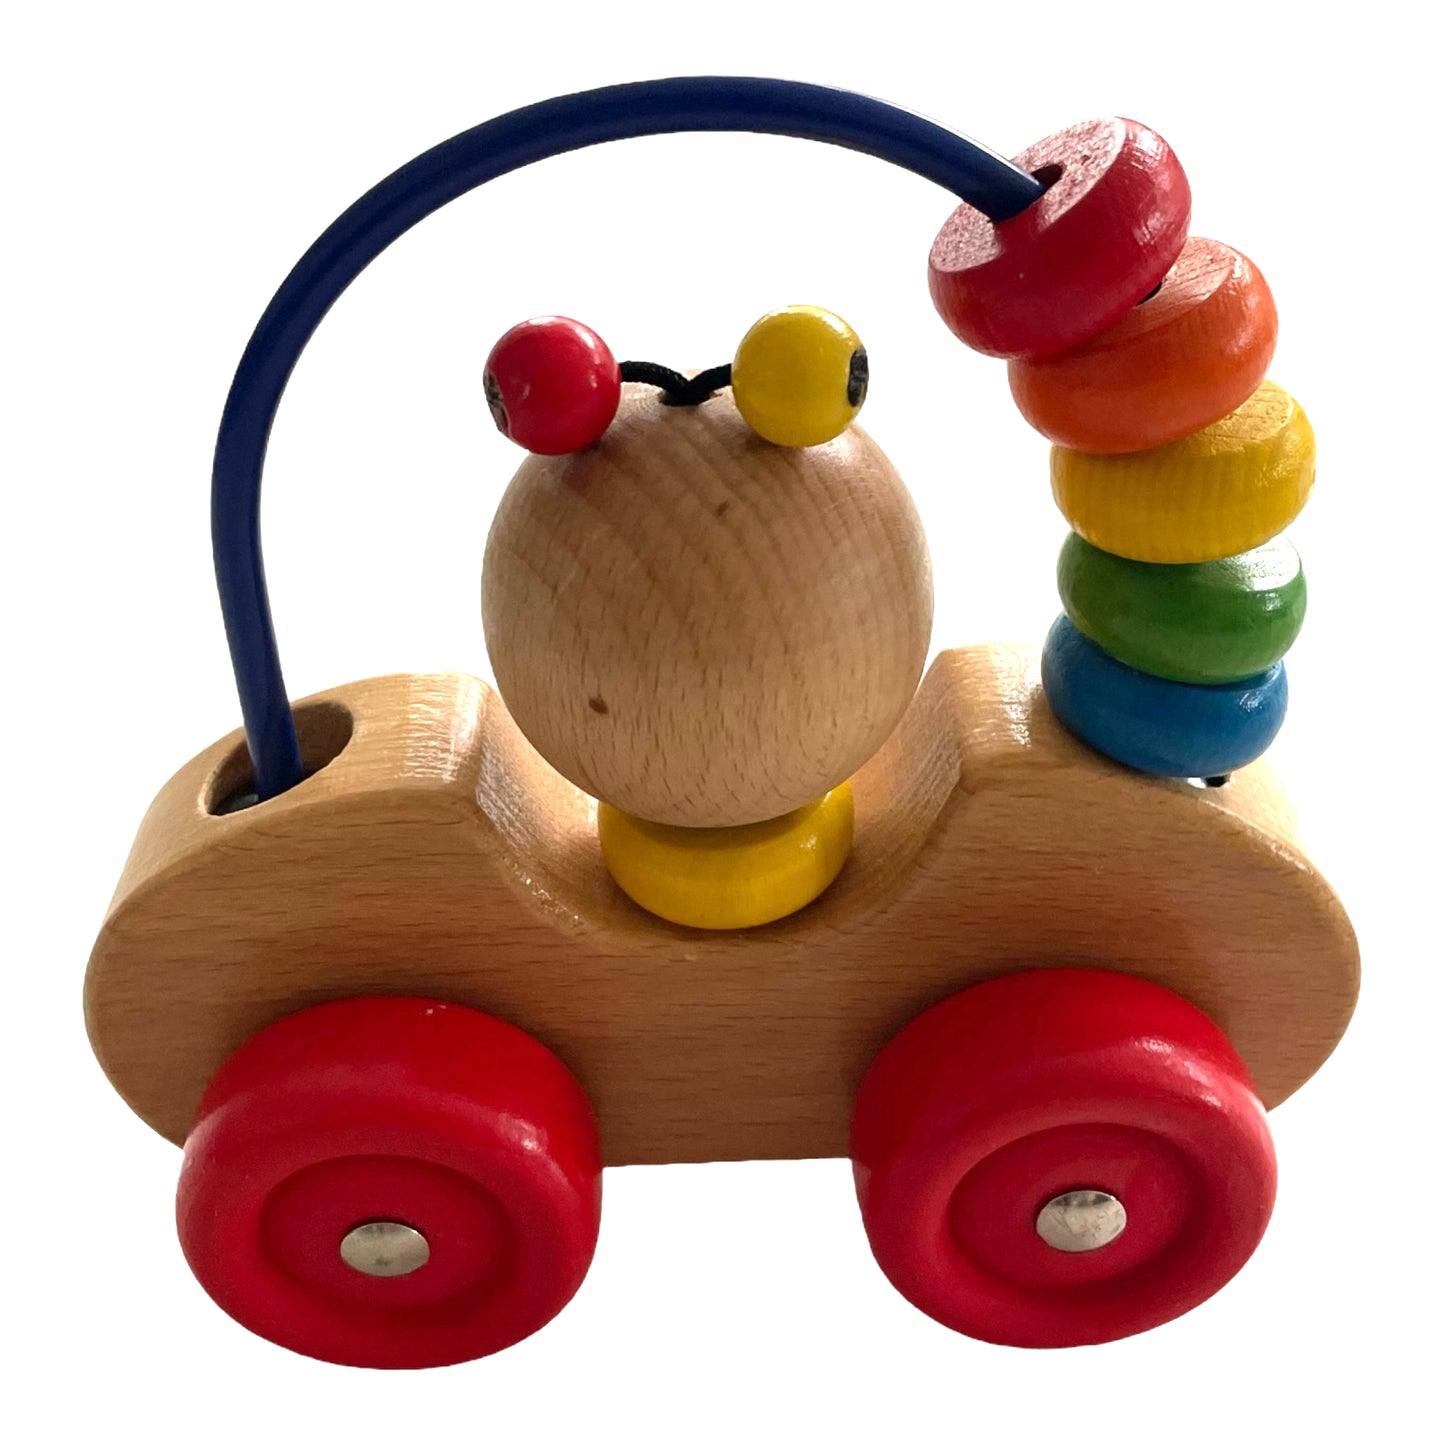 Speedy Car - Baby wooden toy